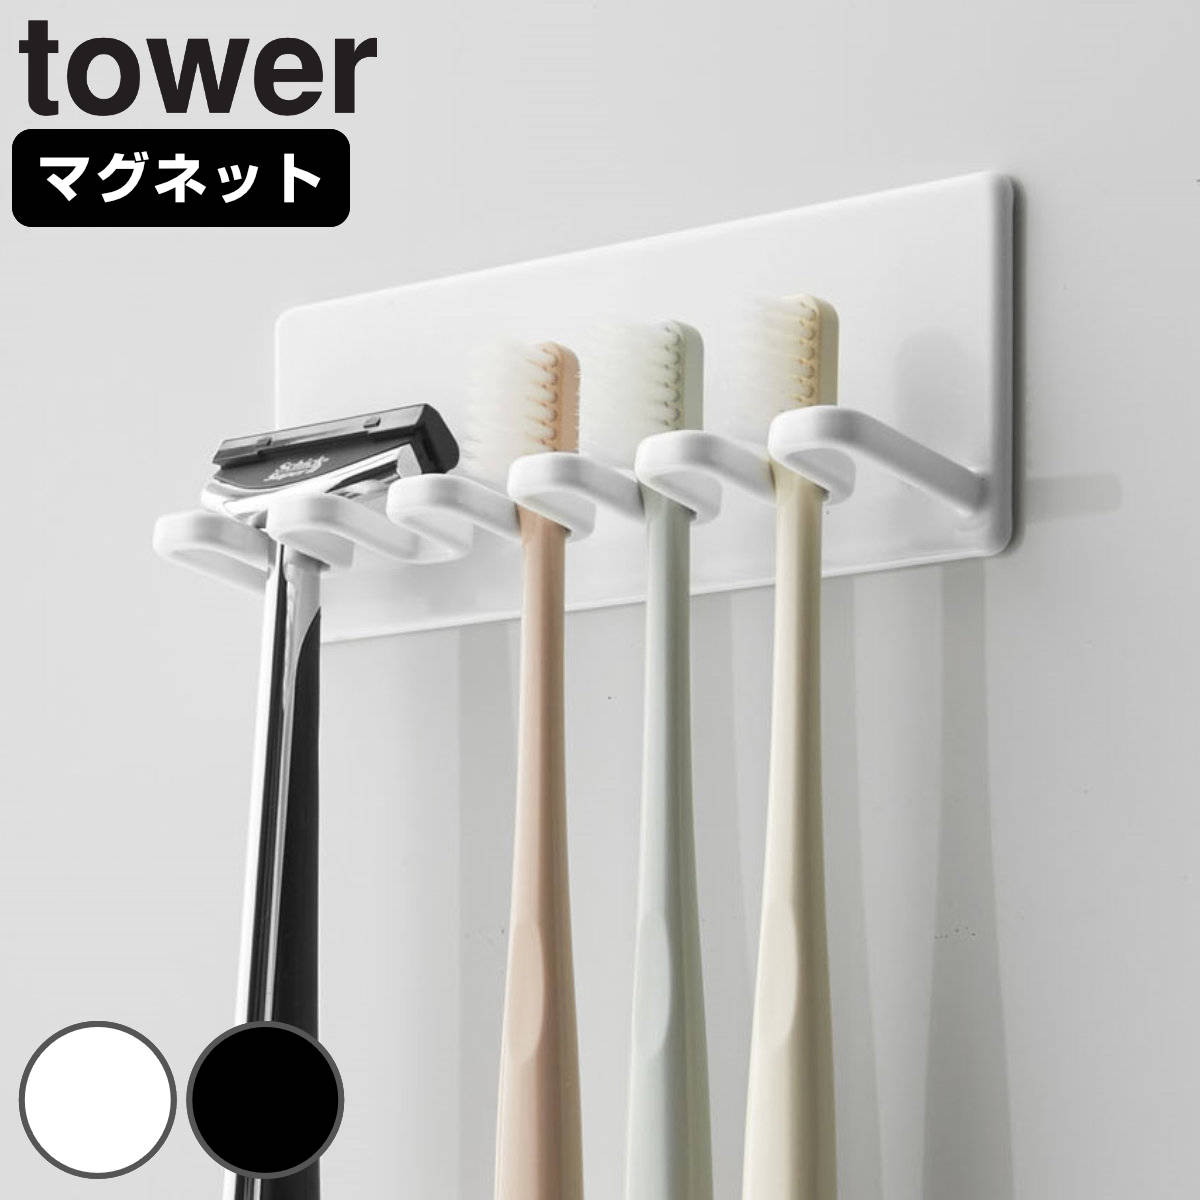 山崎実業 tower マグネットバスルーム歯ブラシホルダー 5連 タワー